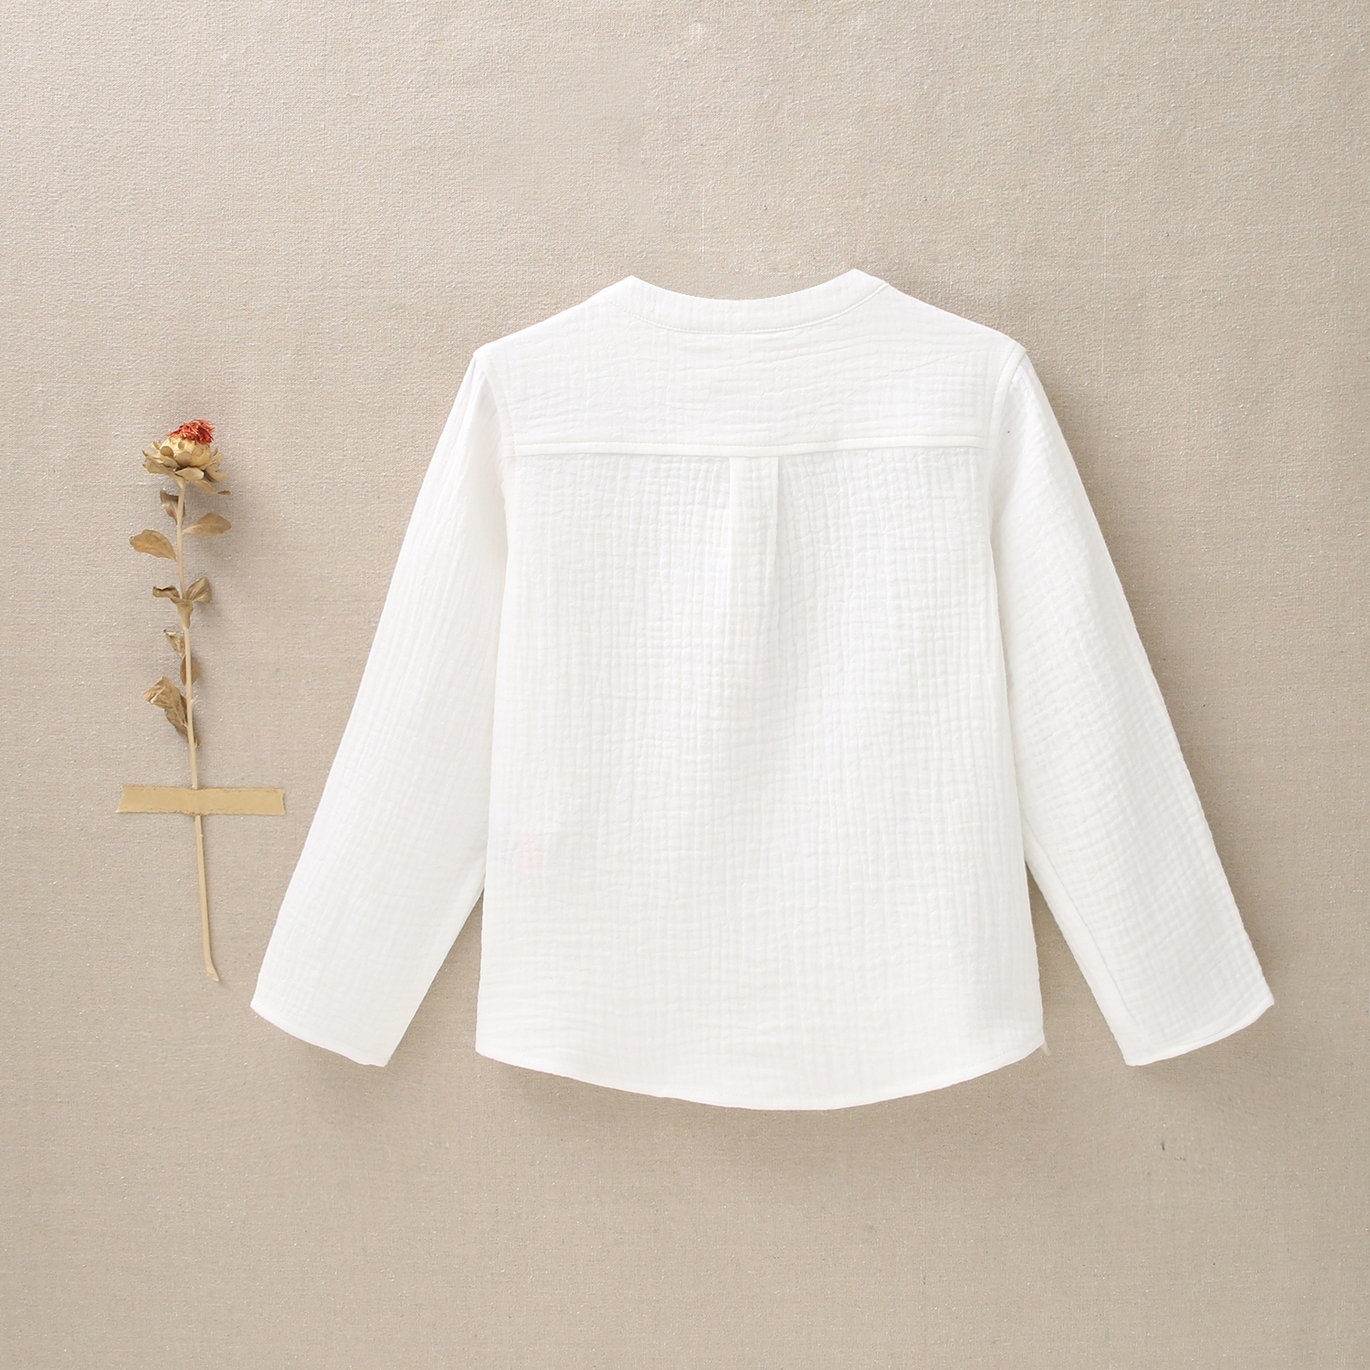 Camiseta blanca con estampado y botones de madera para niña – Cielito